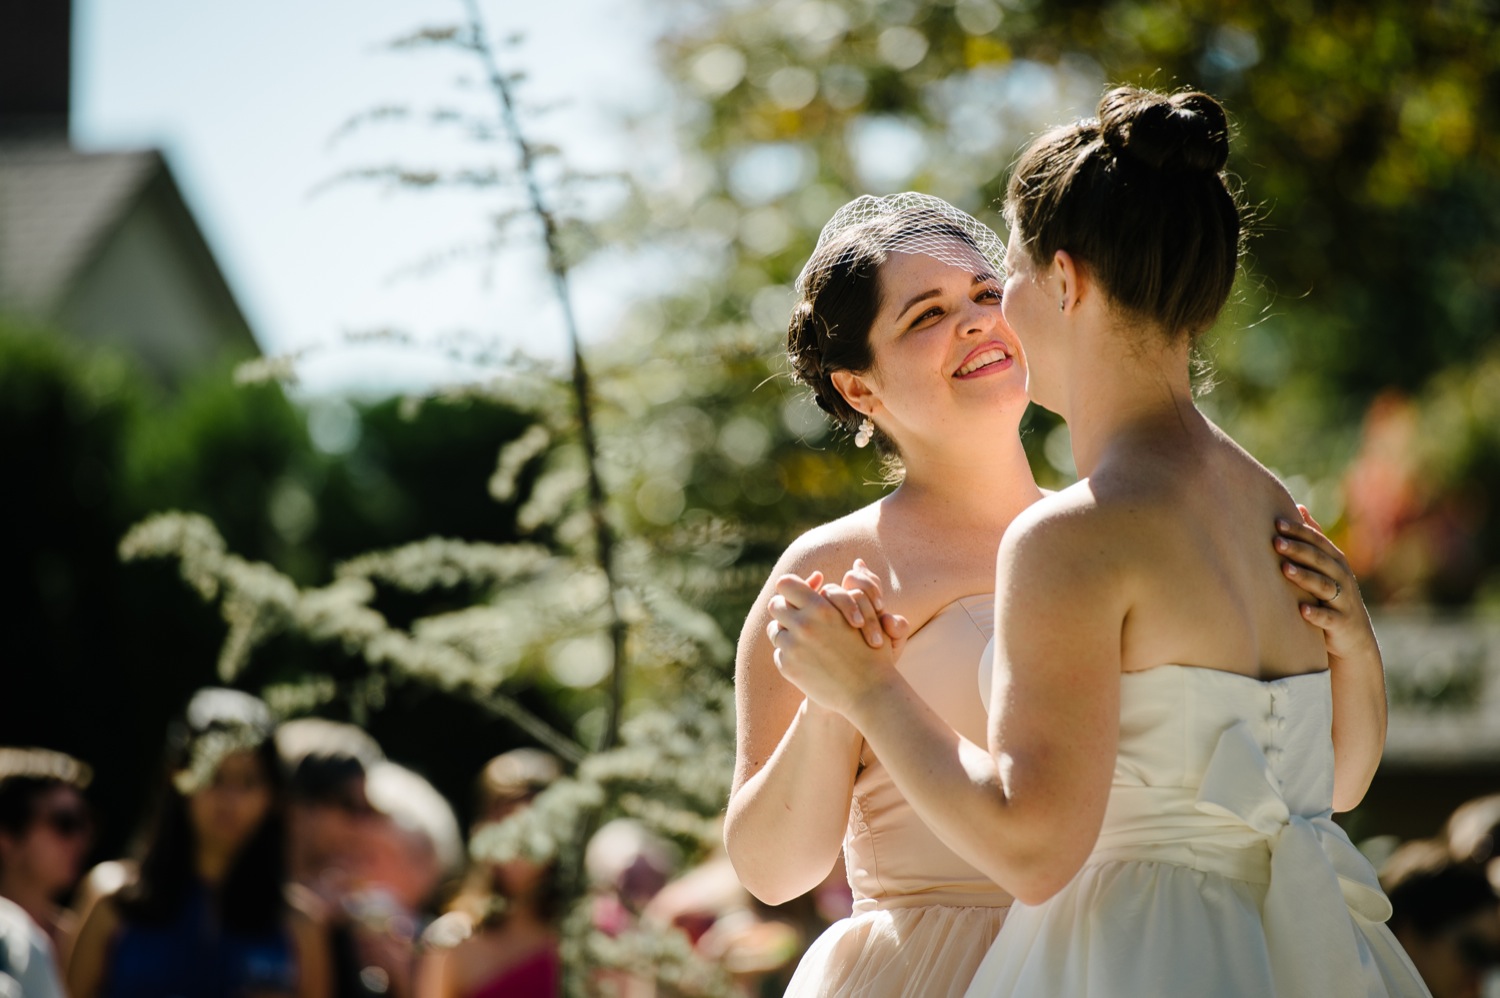 Wedding-Photography-Back Yard-same-sex Wedding-Lesbian Wedding-San Diego